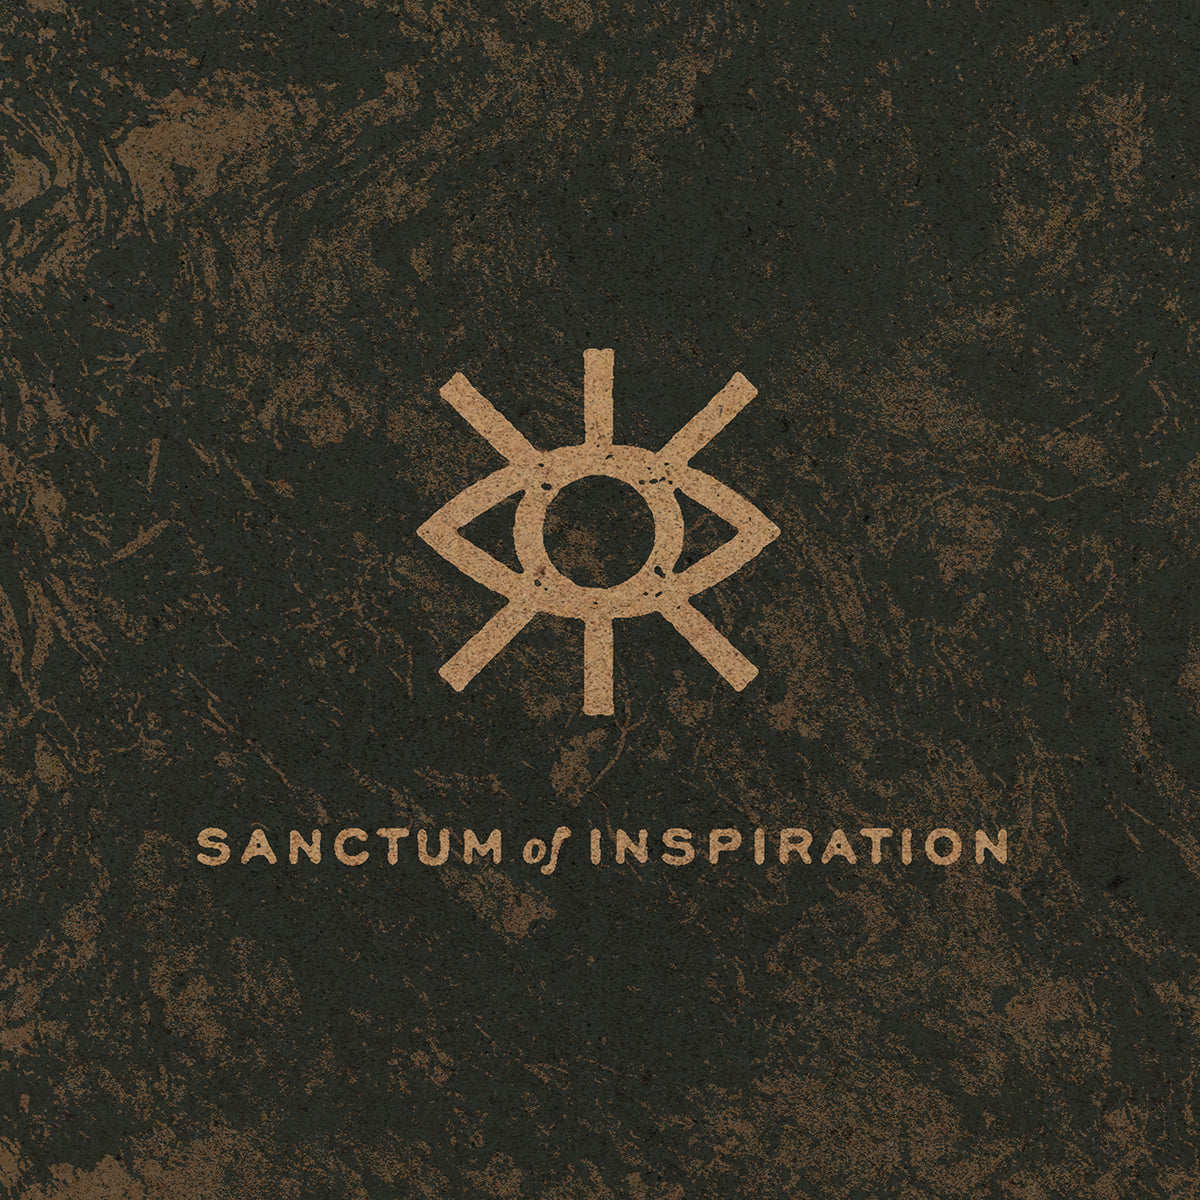 Sanctum of Inspiration